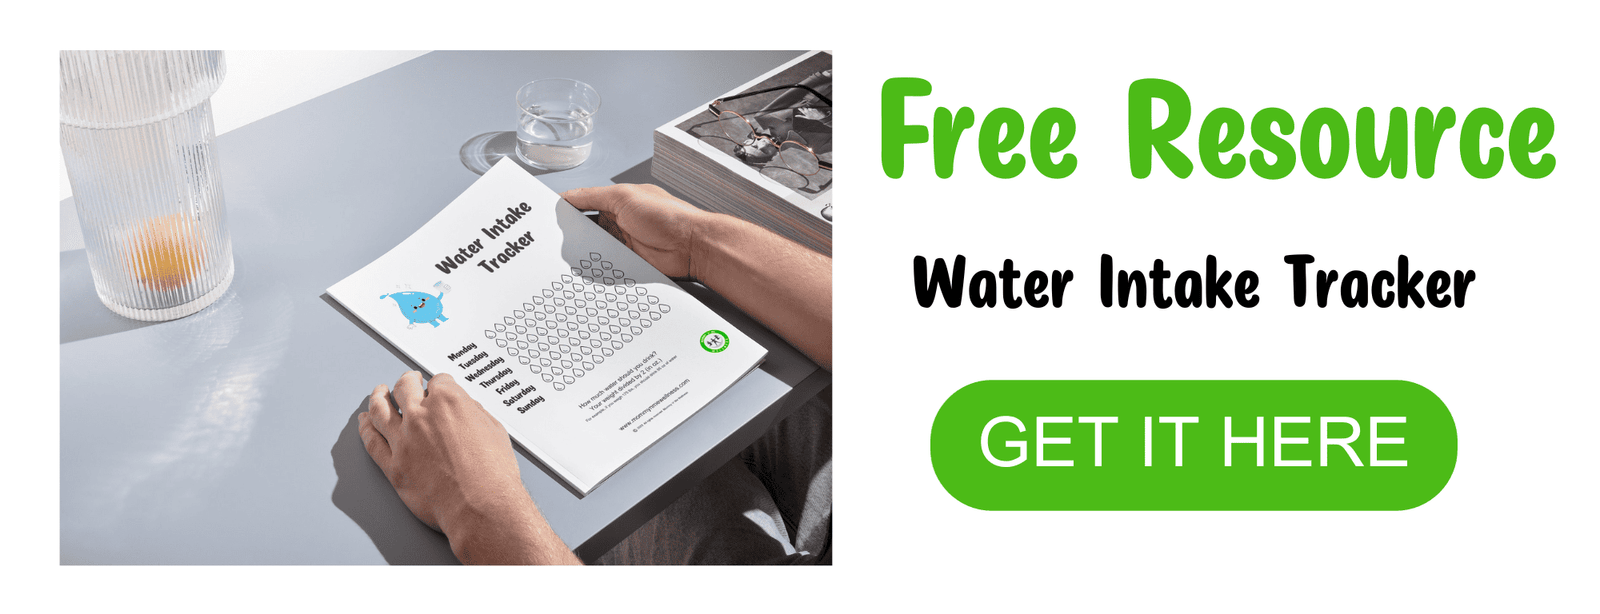 Free Water Intake Tracker